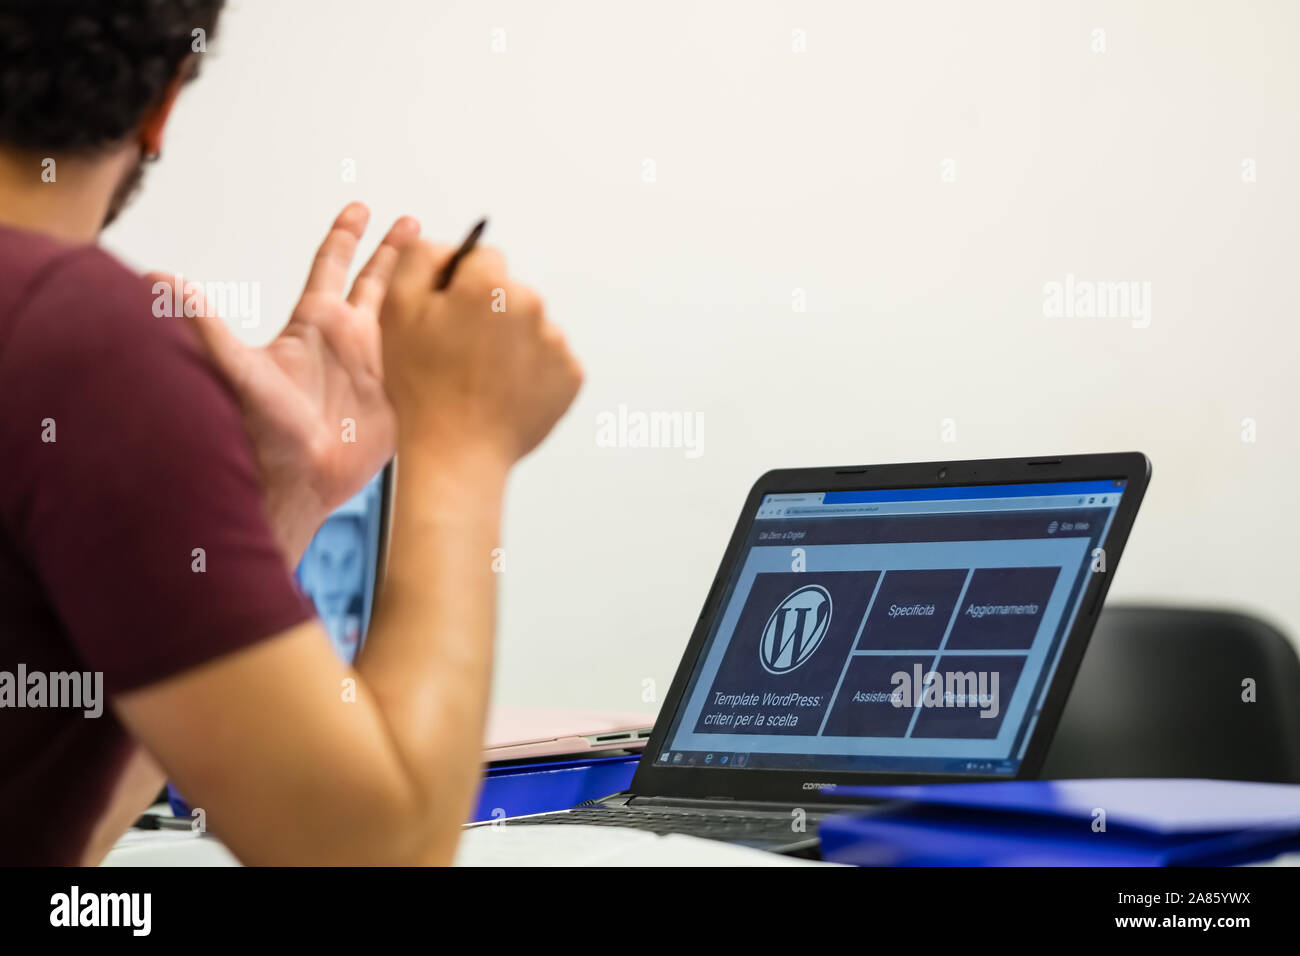 Laptop mit dem Wordpress Logo auf dem Bildschirm fotografiert, junge Fahrer teilweise von hinten mit einem Stift in der Hand gerahmt. Stockfoto